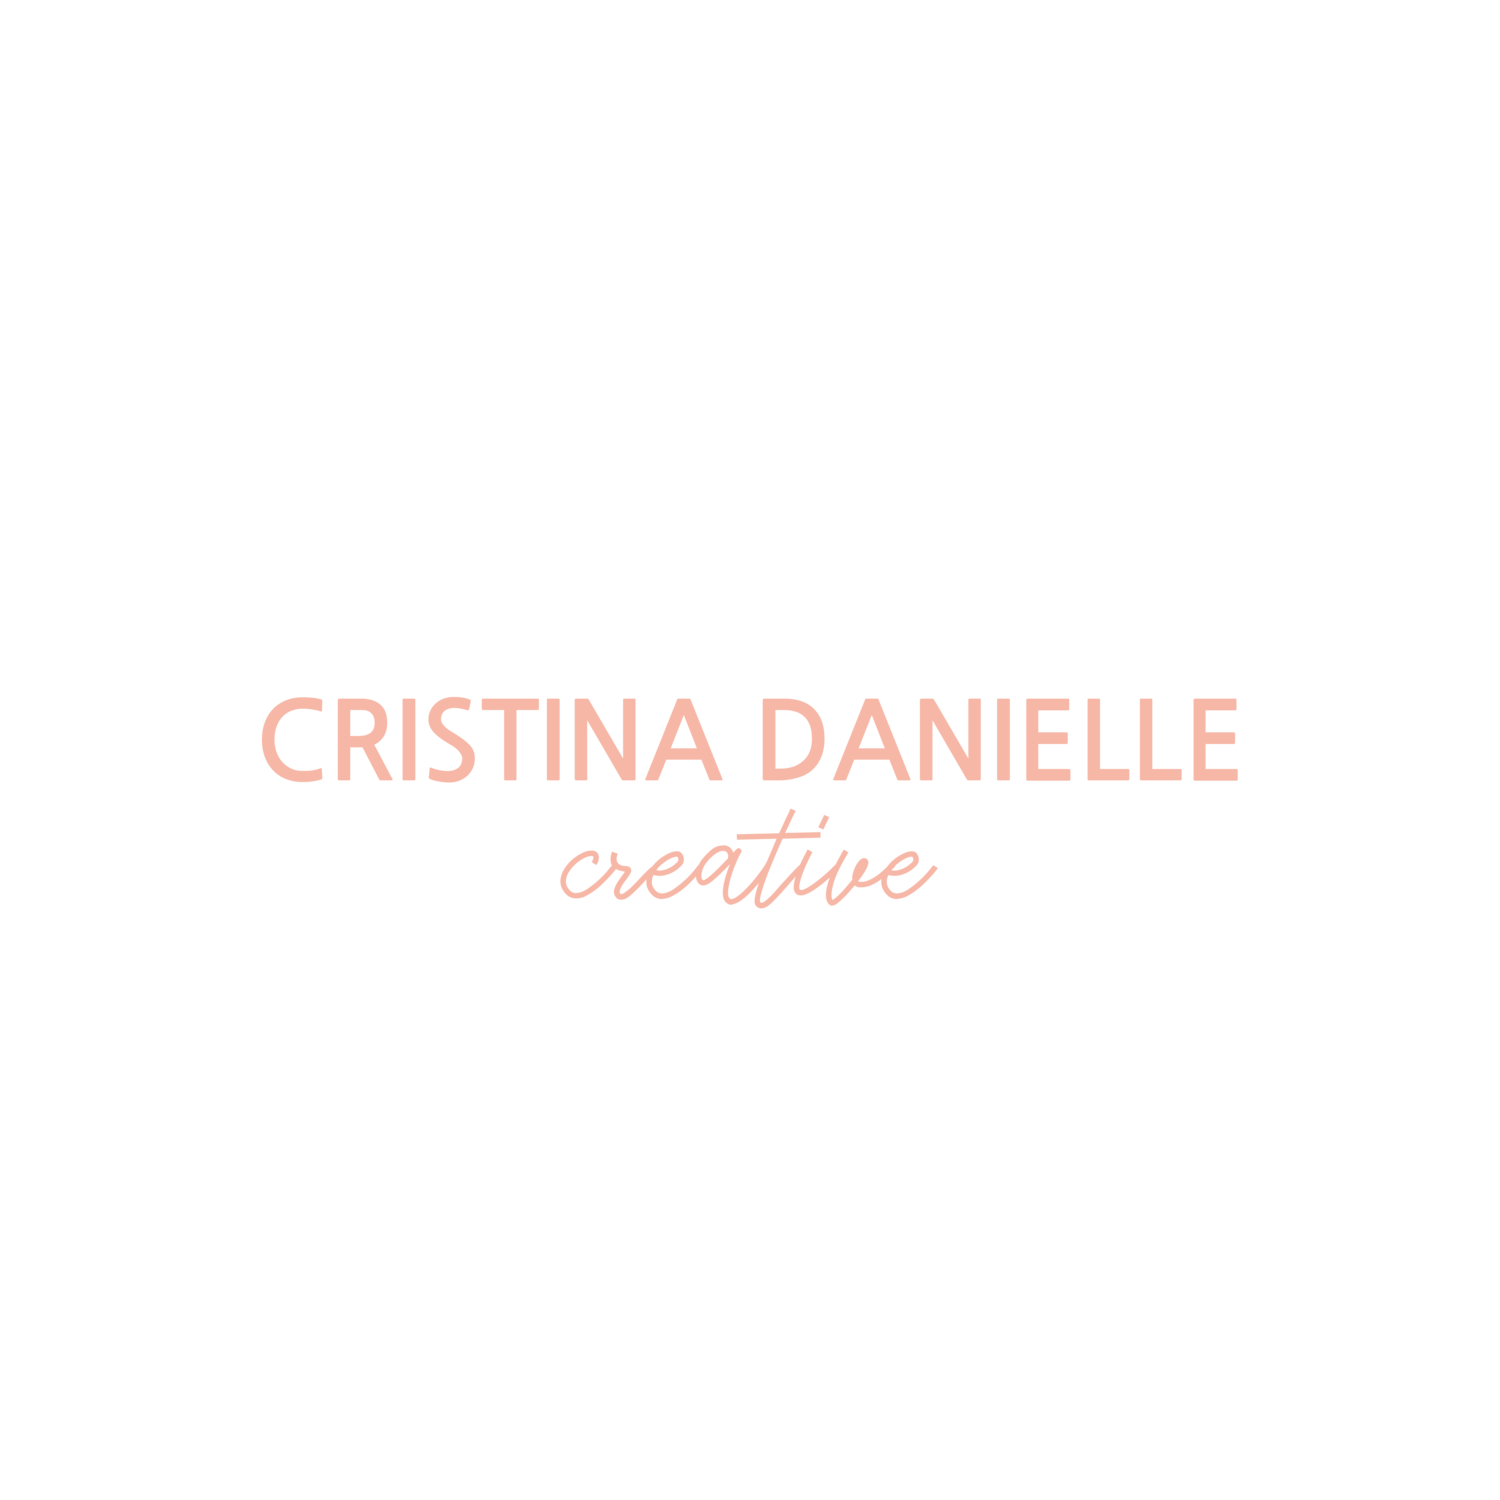 Cristina Danielle Creative